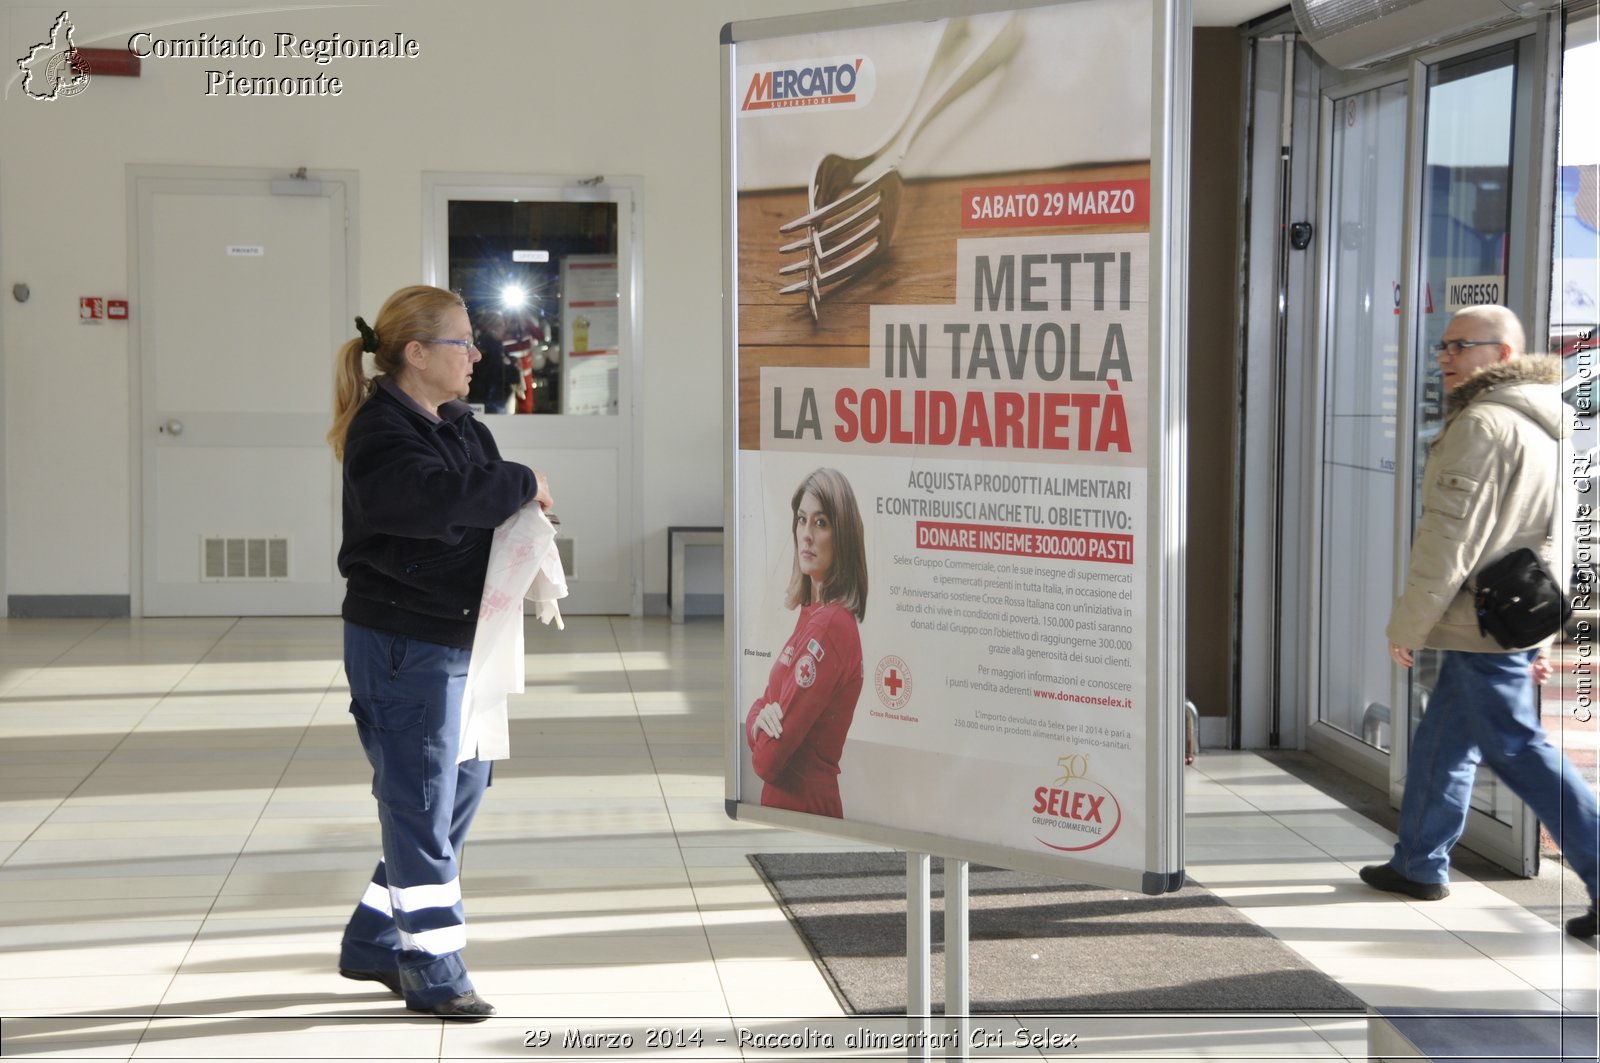 29 Marzo 2014 - Raccolta alimentari Cri Selex - Comitato Regionale del Piemonte